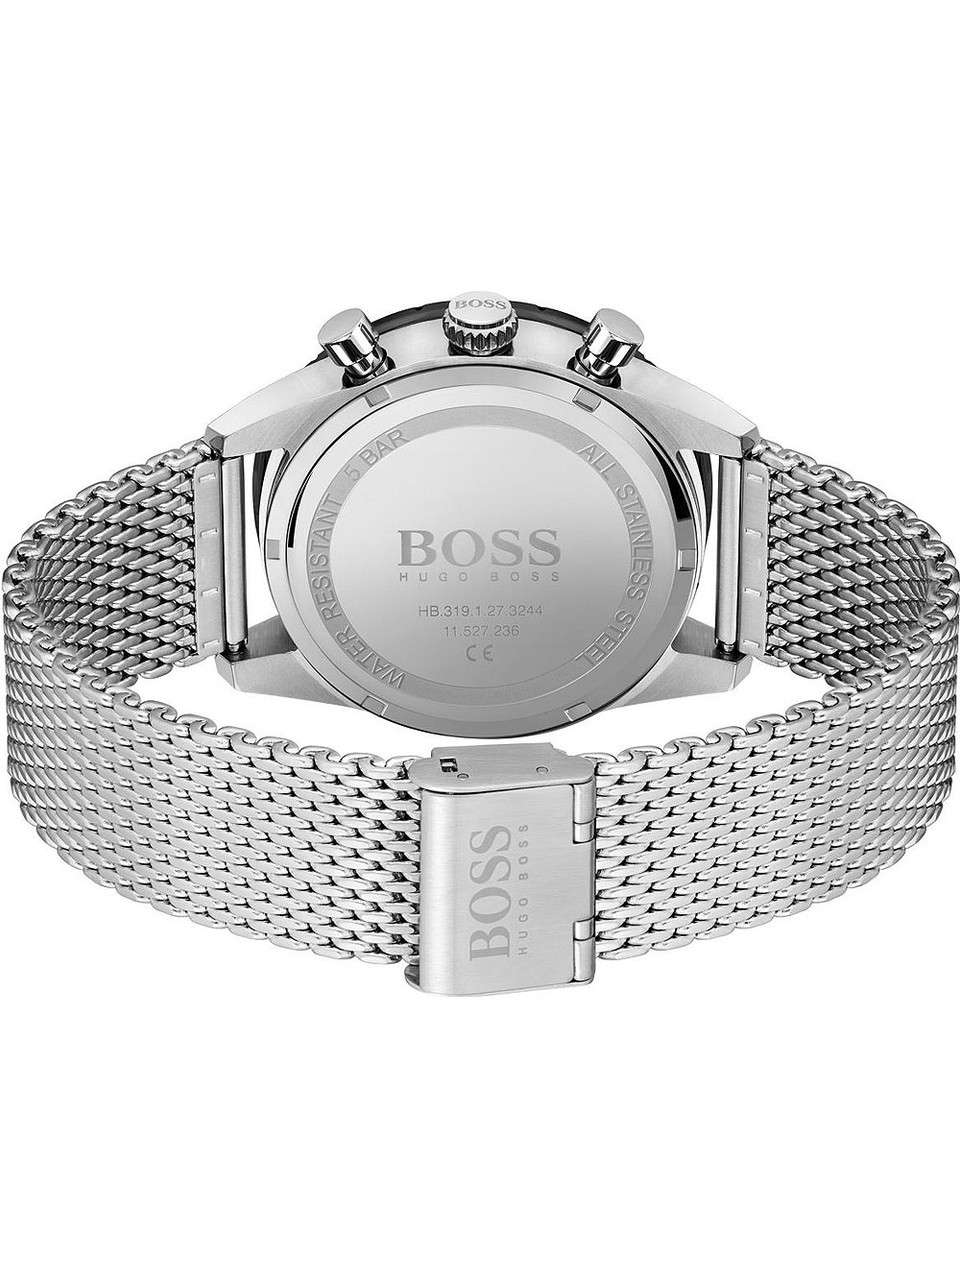 Hugo Boss | owlica 44mm 5ATM Edition chrono 1513886 - Genuine Pilot Watches